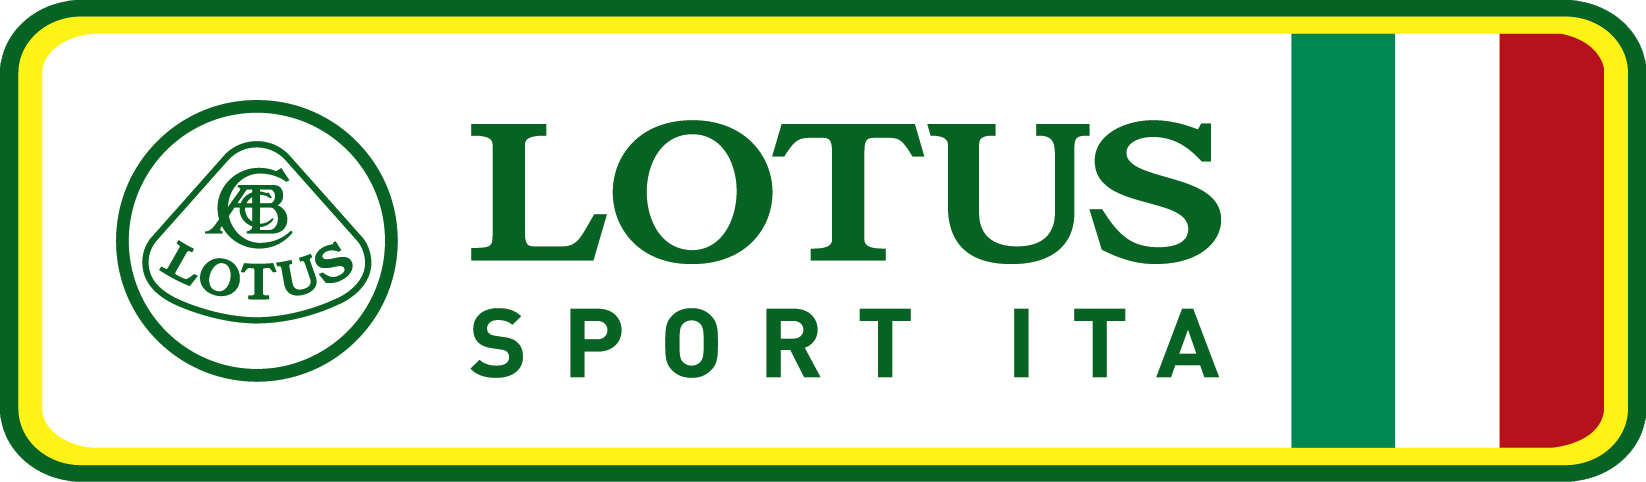 Lotus Car Logo - ABOUT LOTUS SPORT ITALY